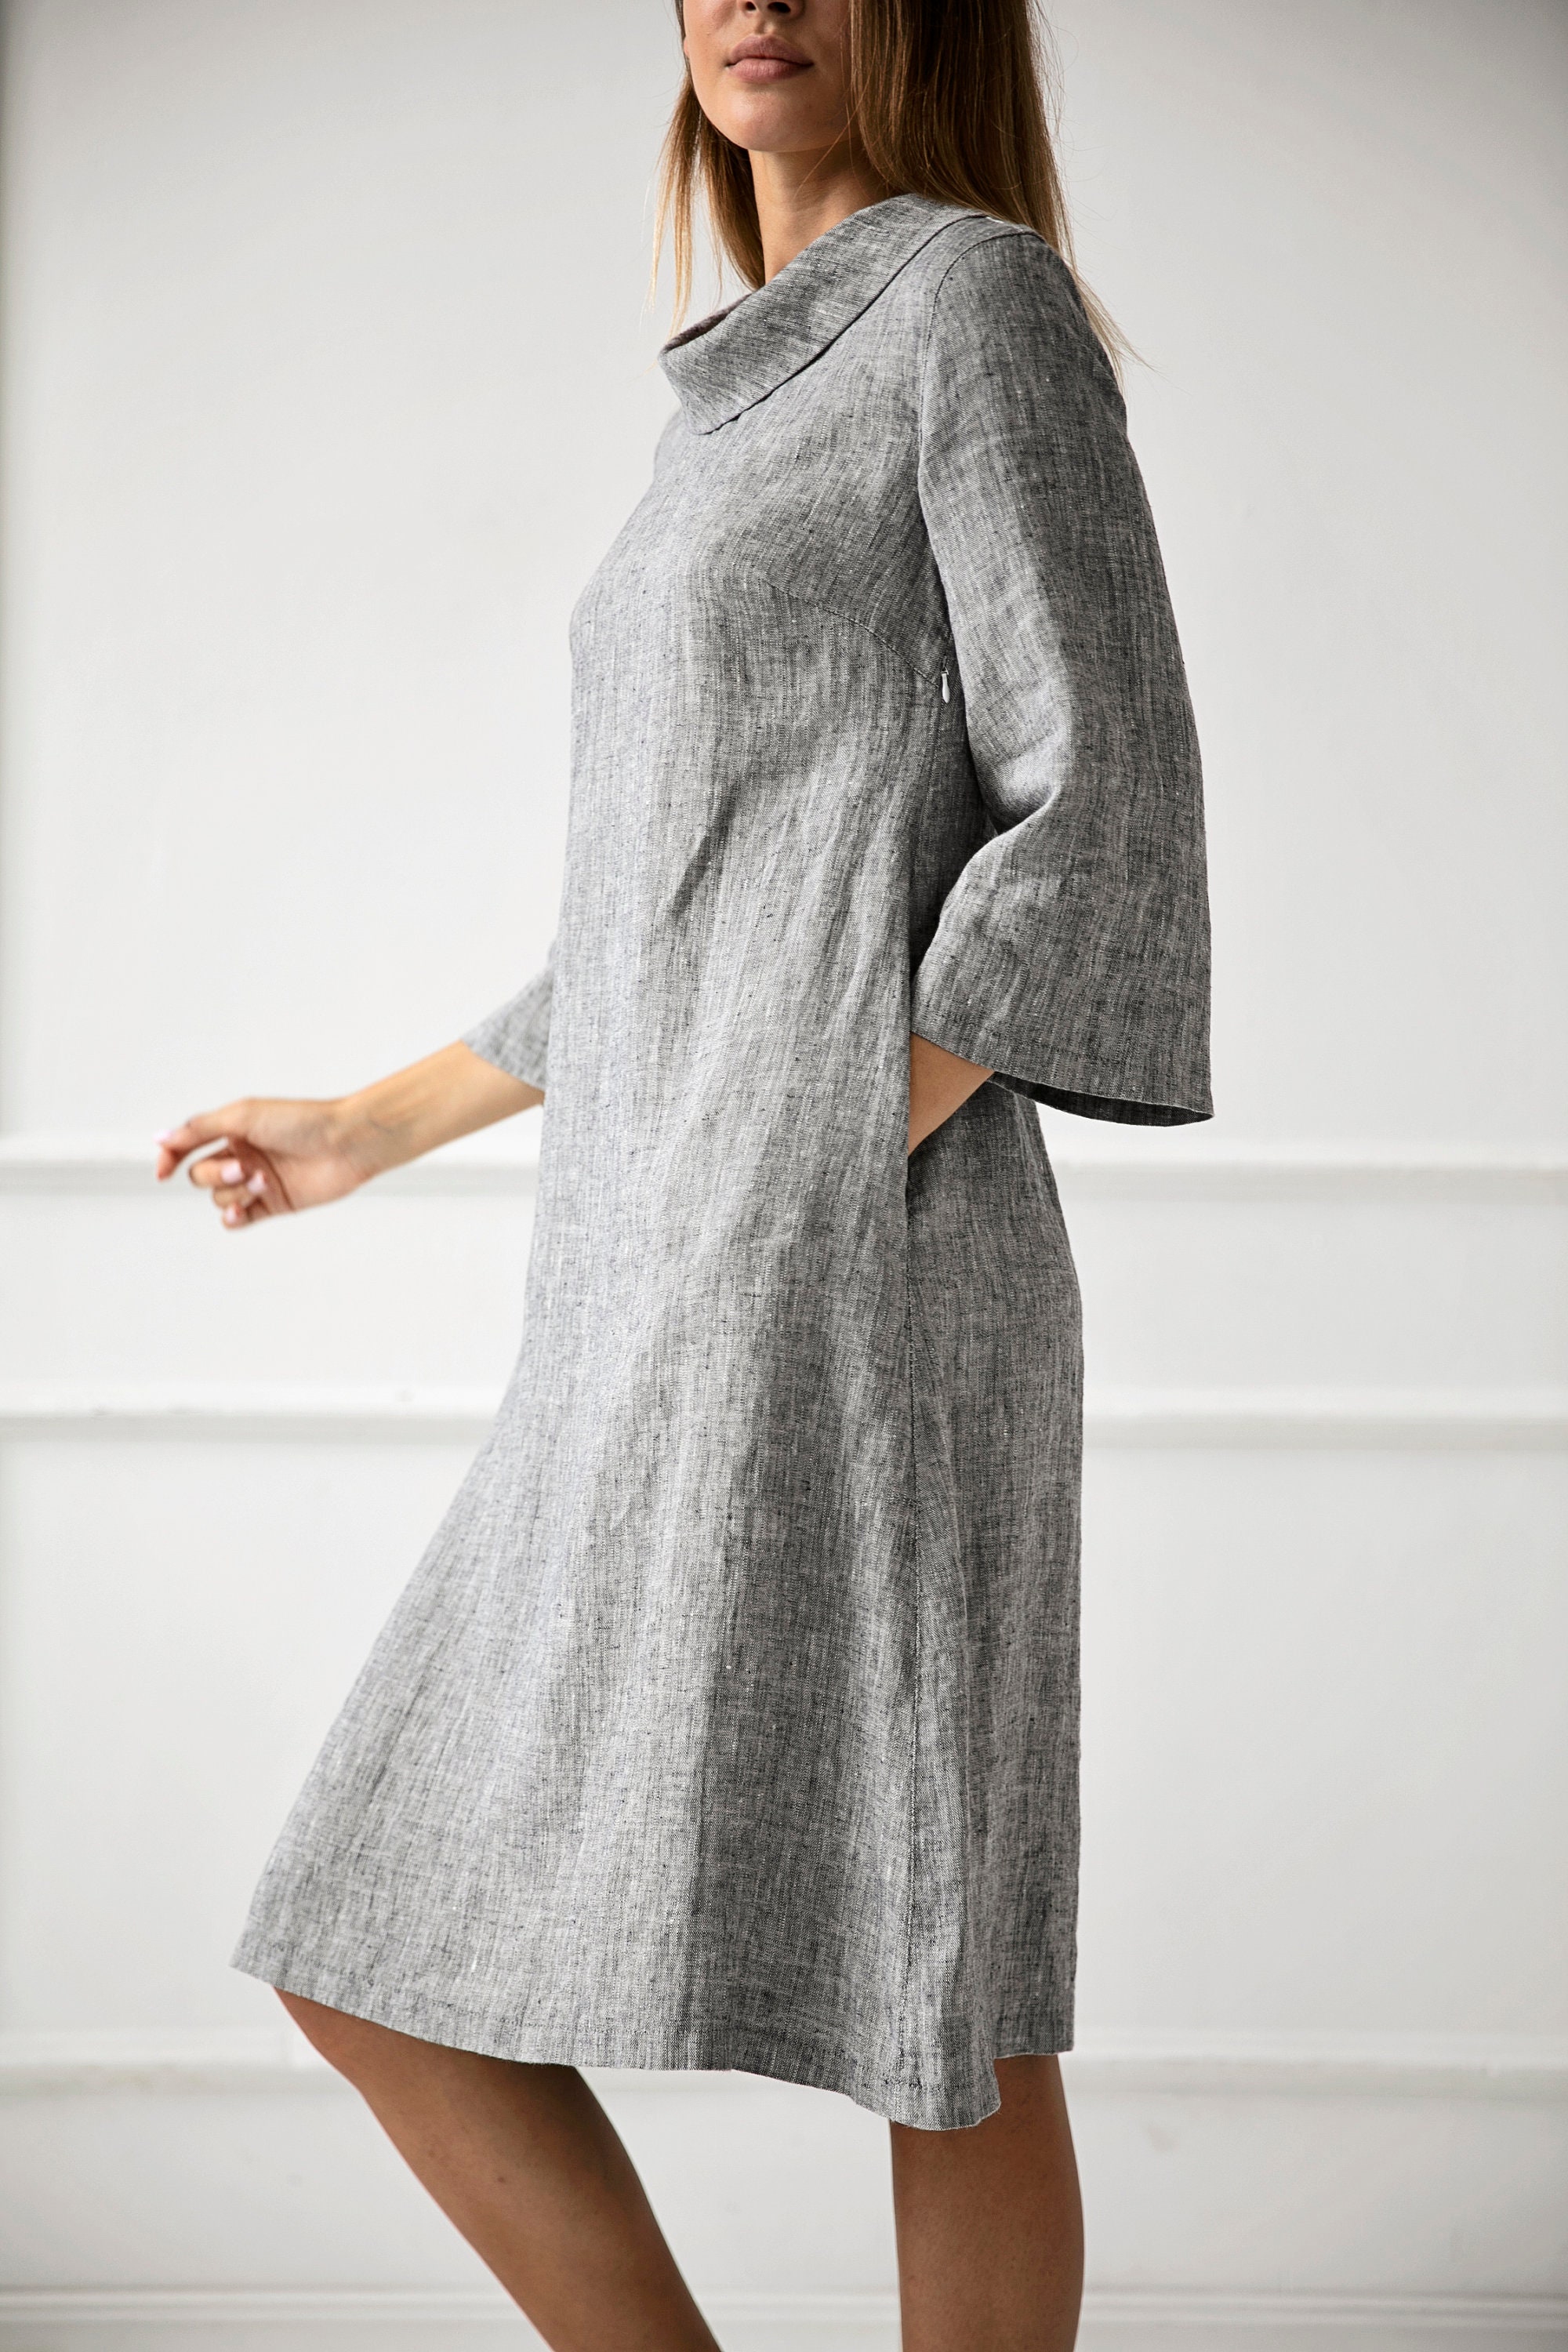 100% Linen Dress Loose Linen Dress Flax Dress Linen - Etsy